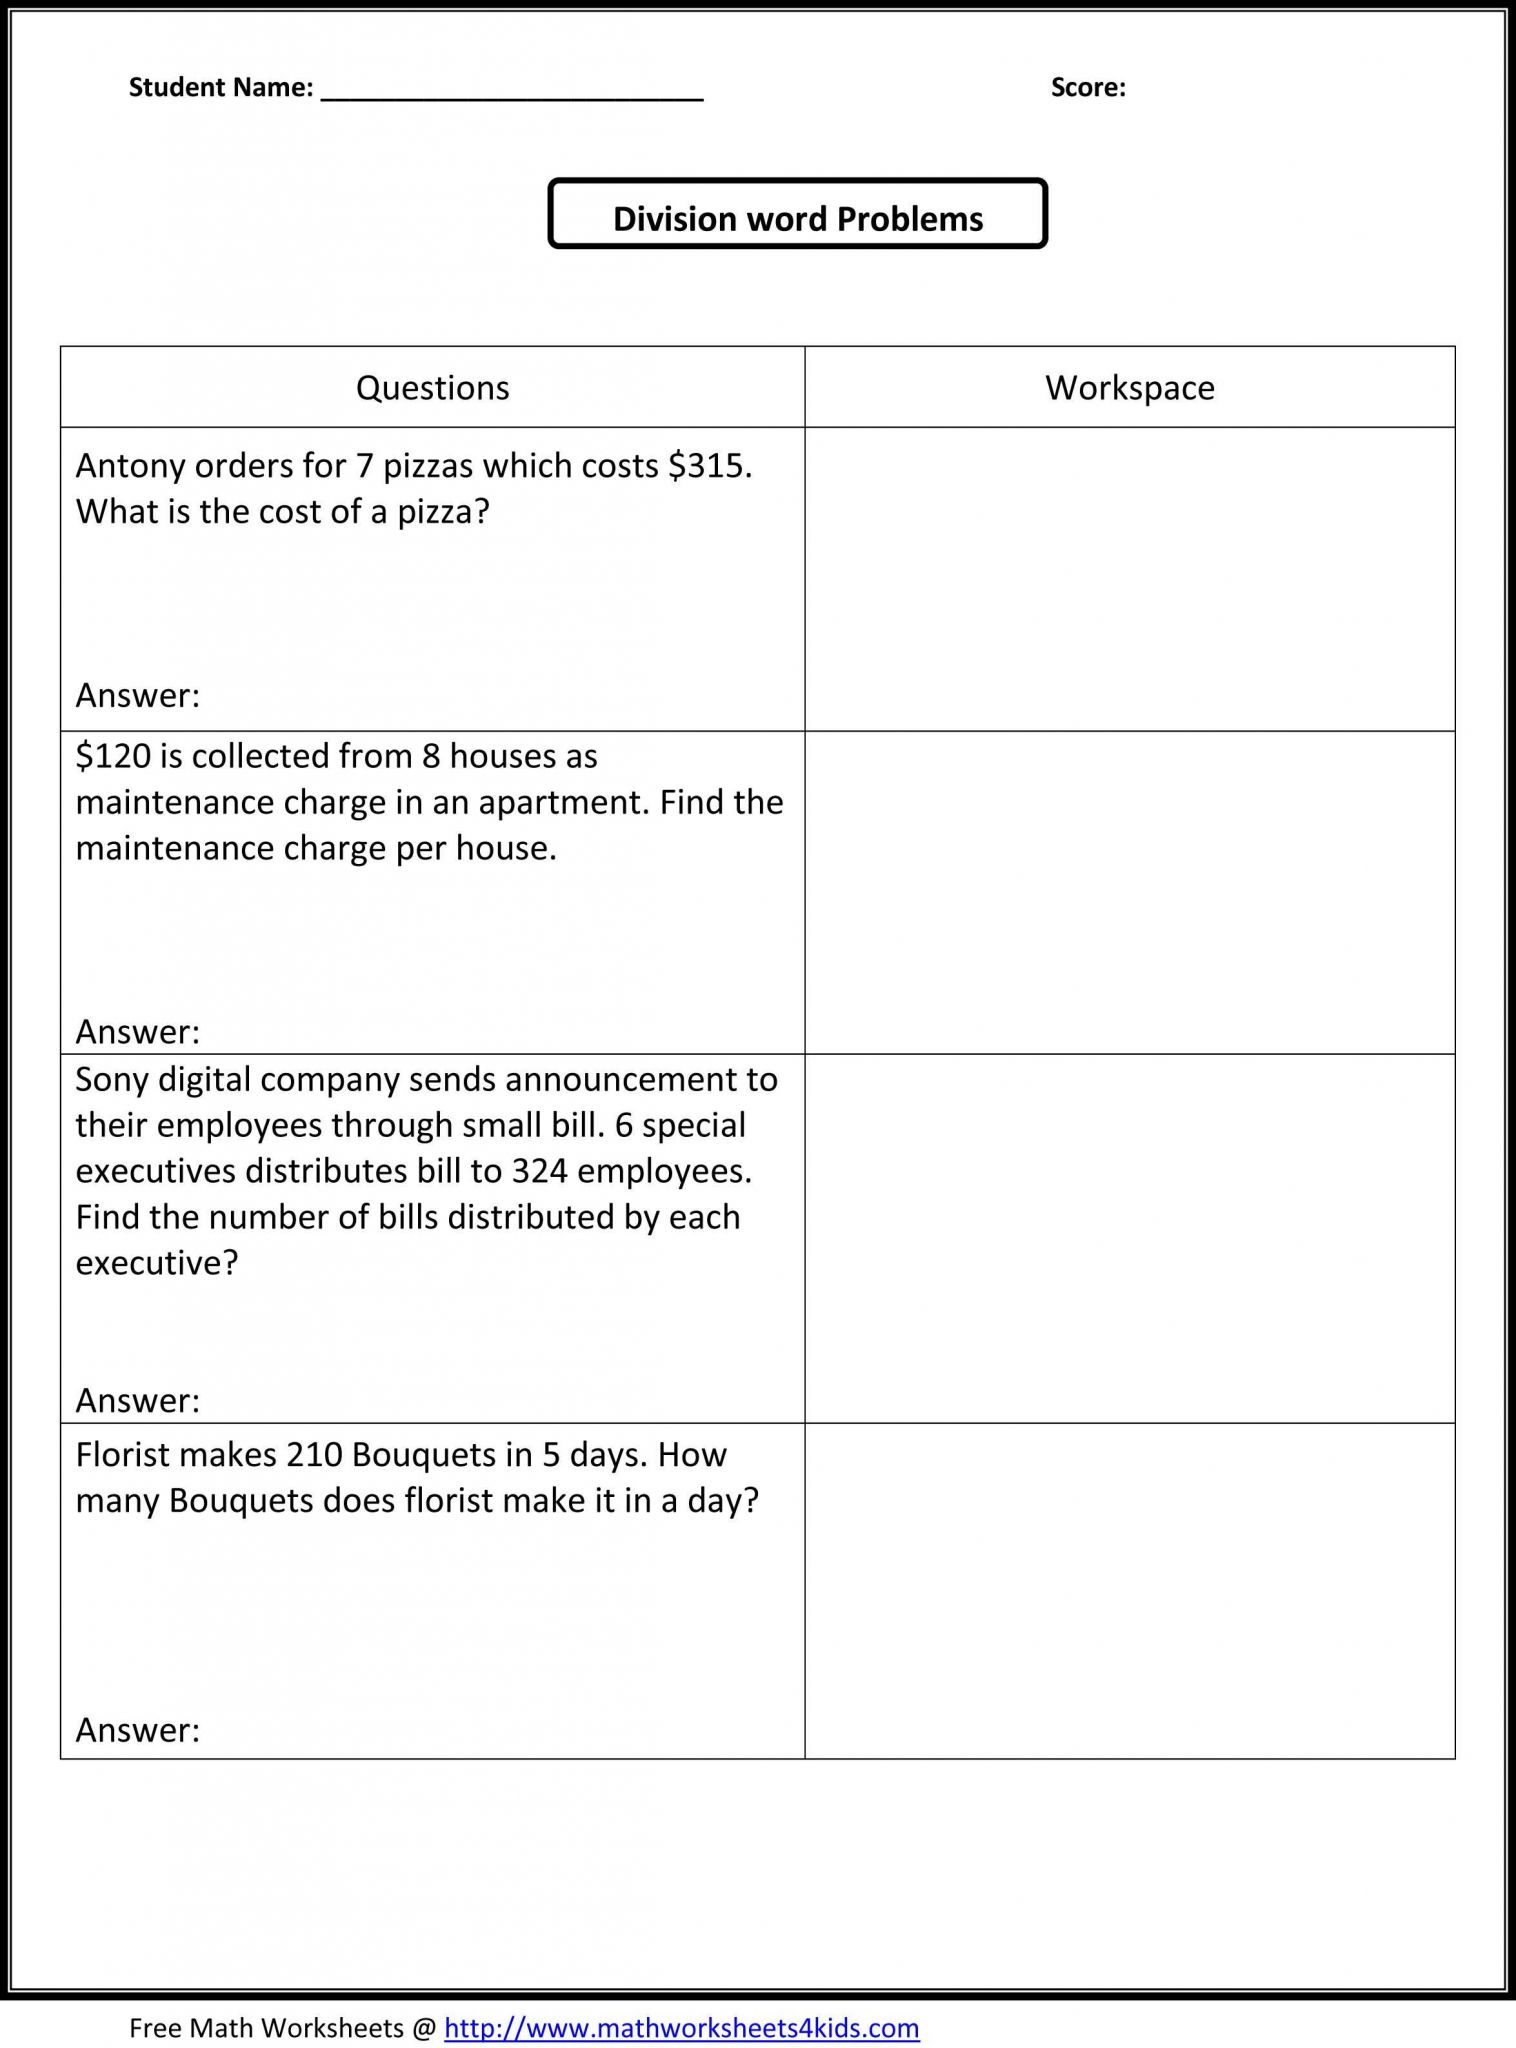 5th Grade social Studies Worksheets Pdf as Well as 4th Grade Math Word Problems Worksheets Pdf the Best Worksheets